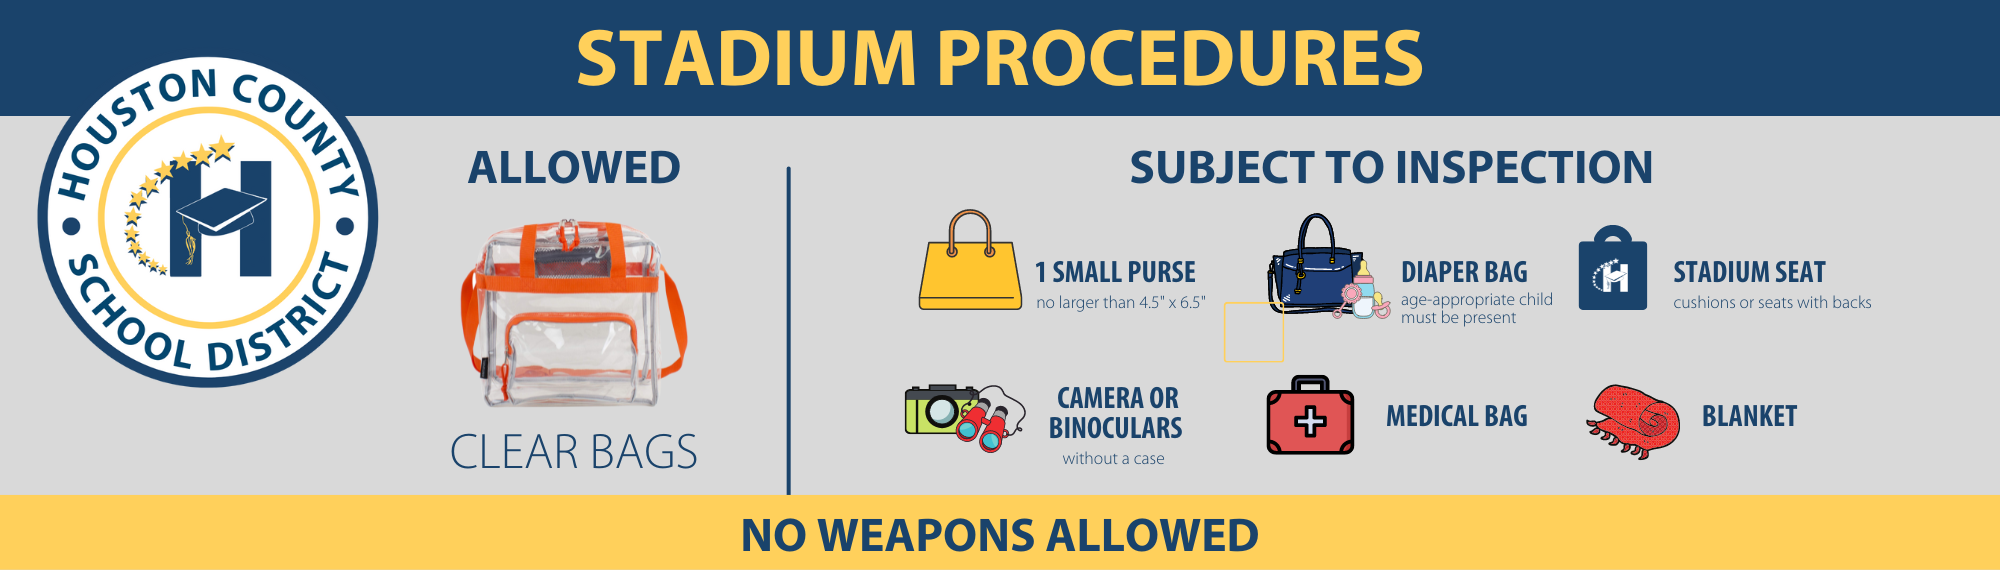 Stadium Procedures